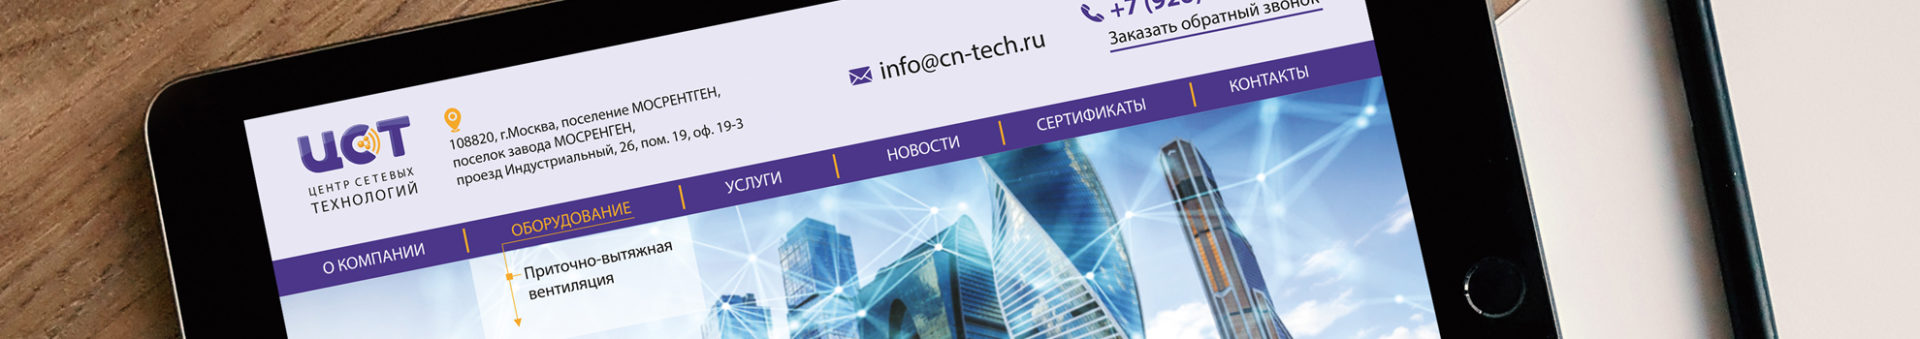 Разработка логотипа и сайта для компании «Центр Сетевых Технологий»